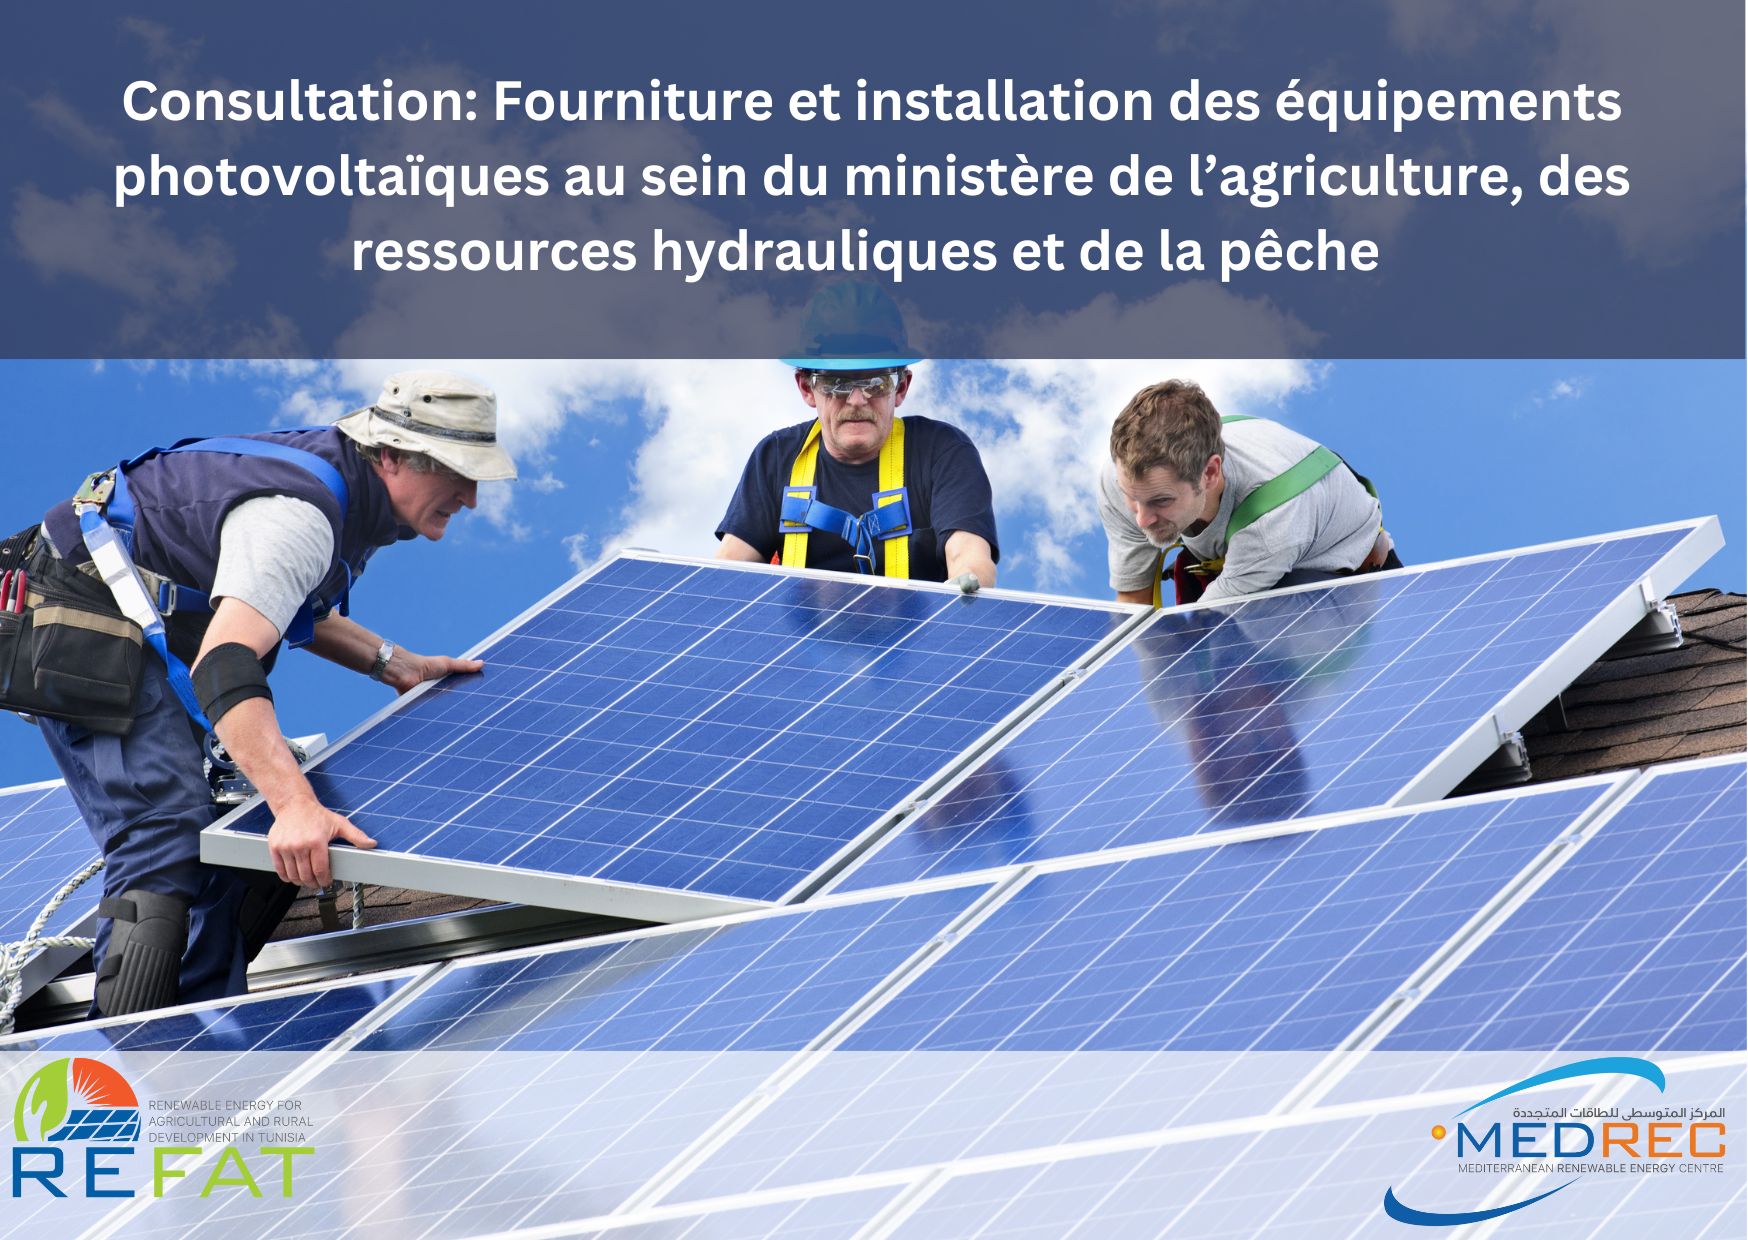 [REFAT] Consultation: Fourniture et installation des équipements photovoltaïques au sein du ministère de l’agriculture, des ressources hydrauliques et de la pêche